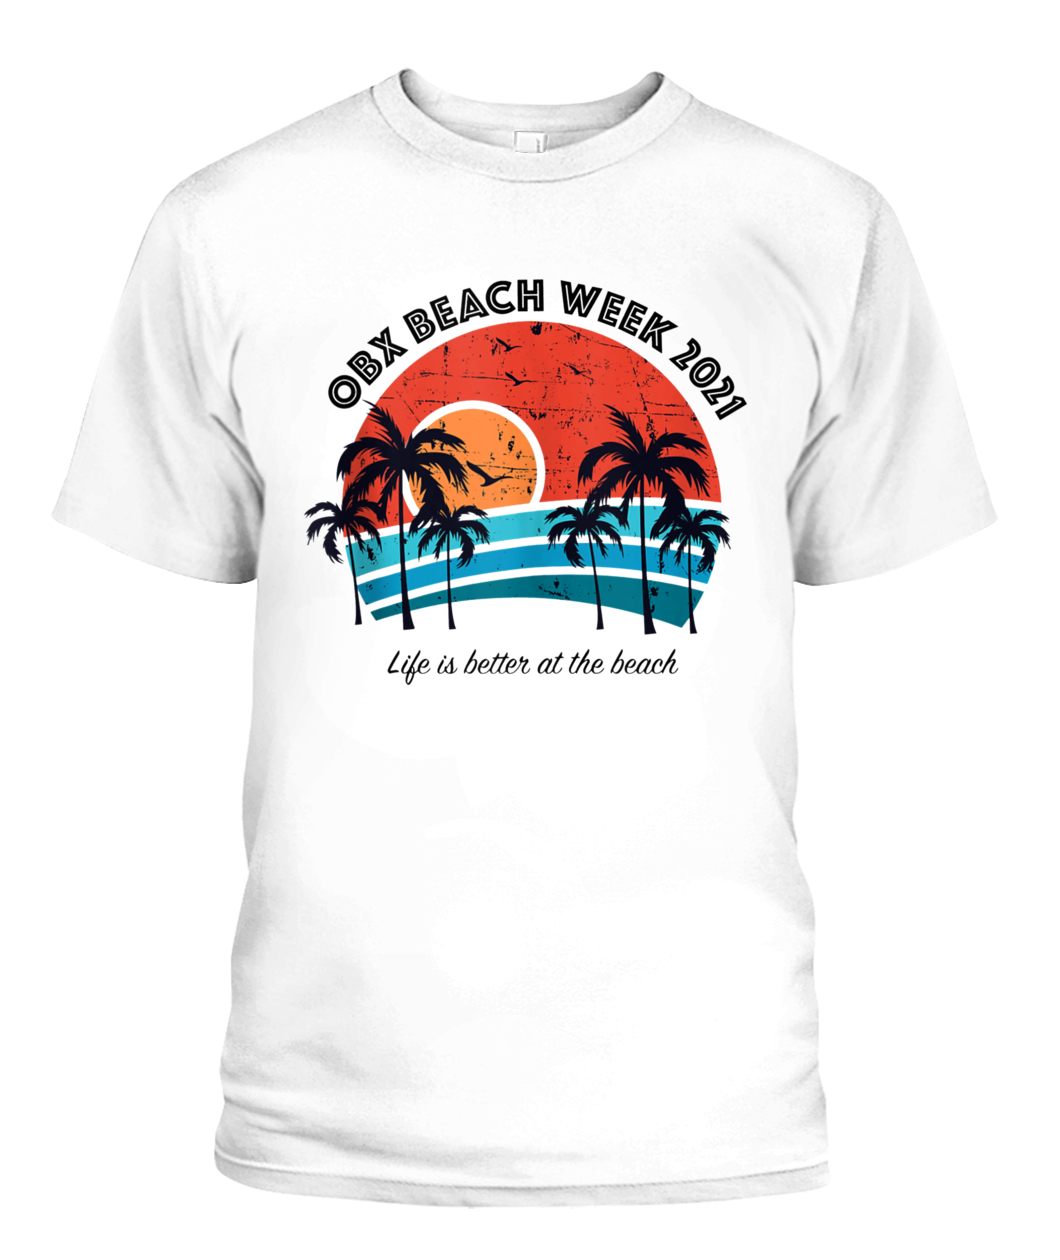 OBX Beach Week 2021 T-Shirt - Ellie Shirt